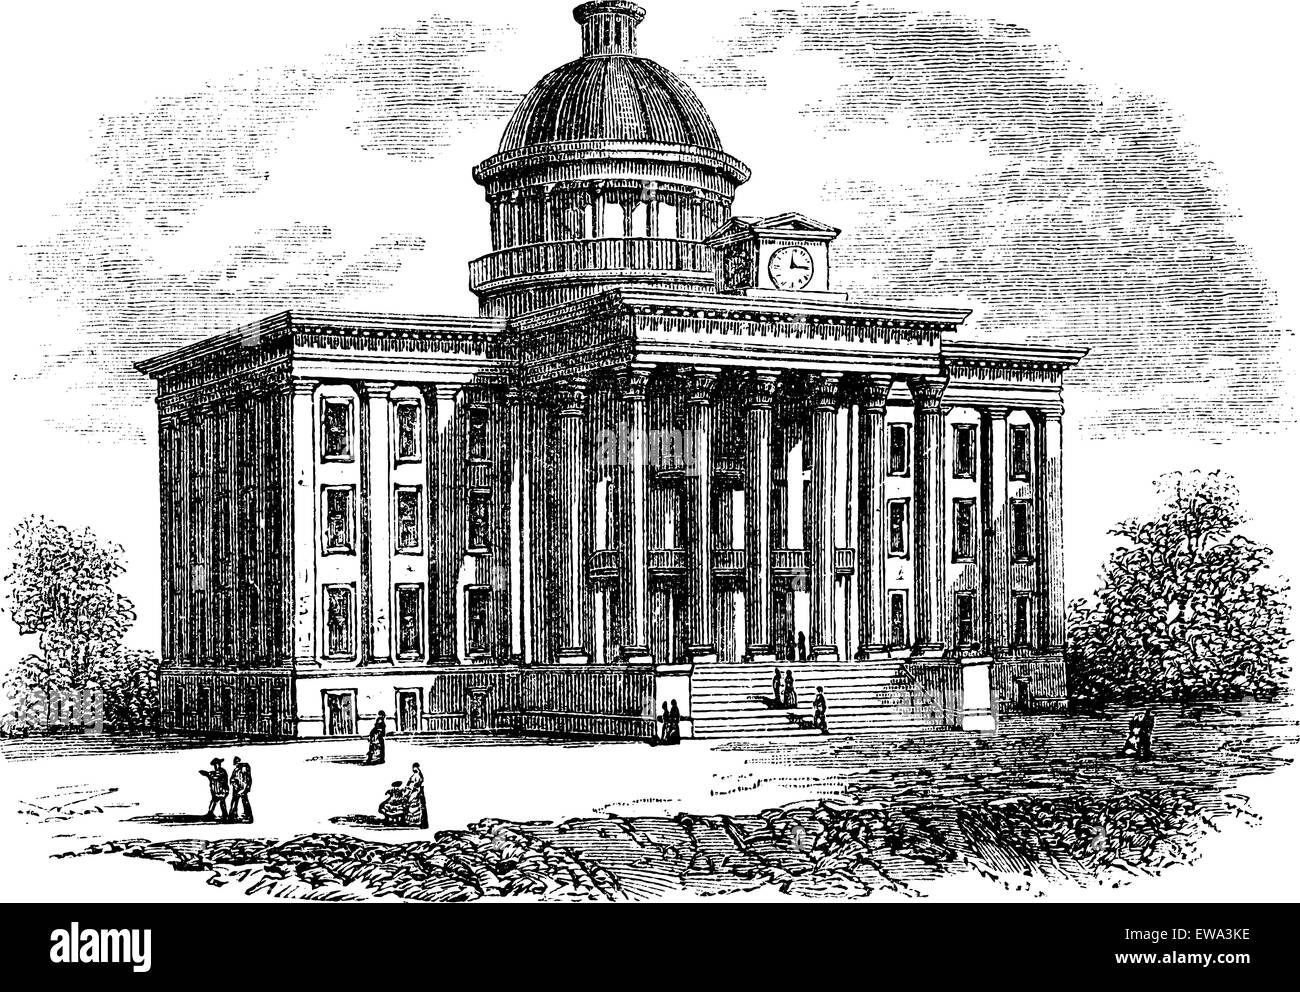 Alabama State Capitol Building, Vereinigte Staaten von Amerika, Vintage gravierten Abbildung. Trousset Enzyklopädie (1886-1891). Stock Vektor